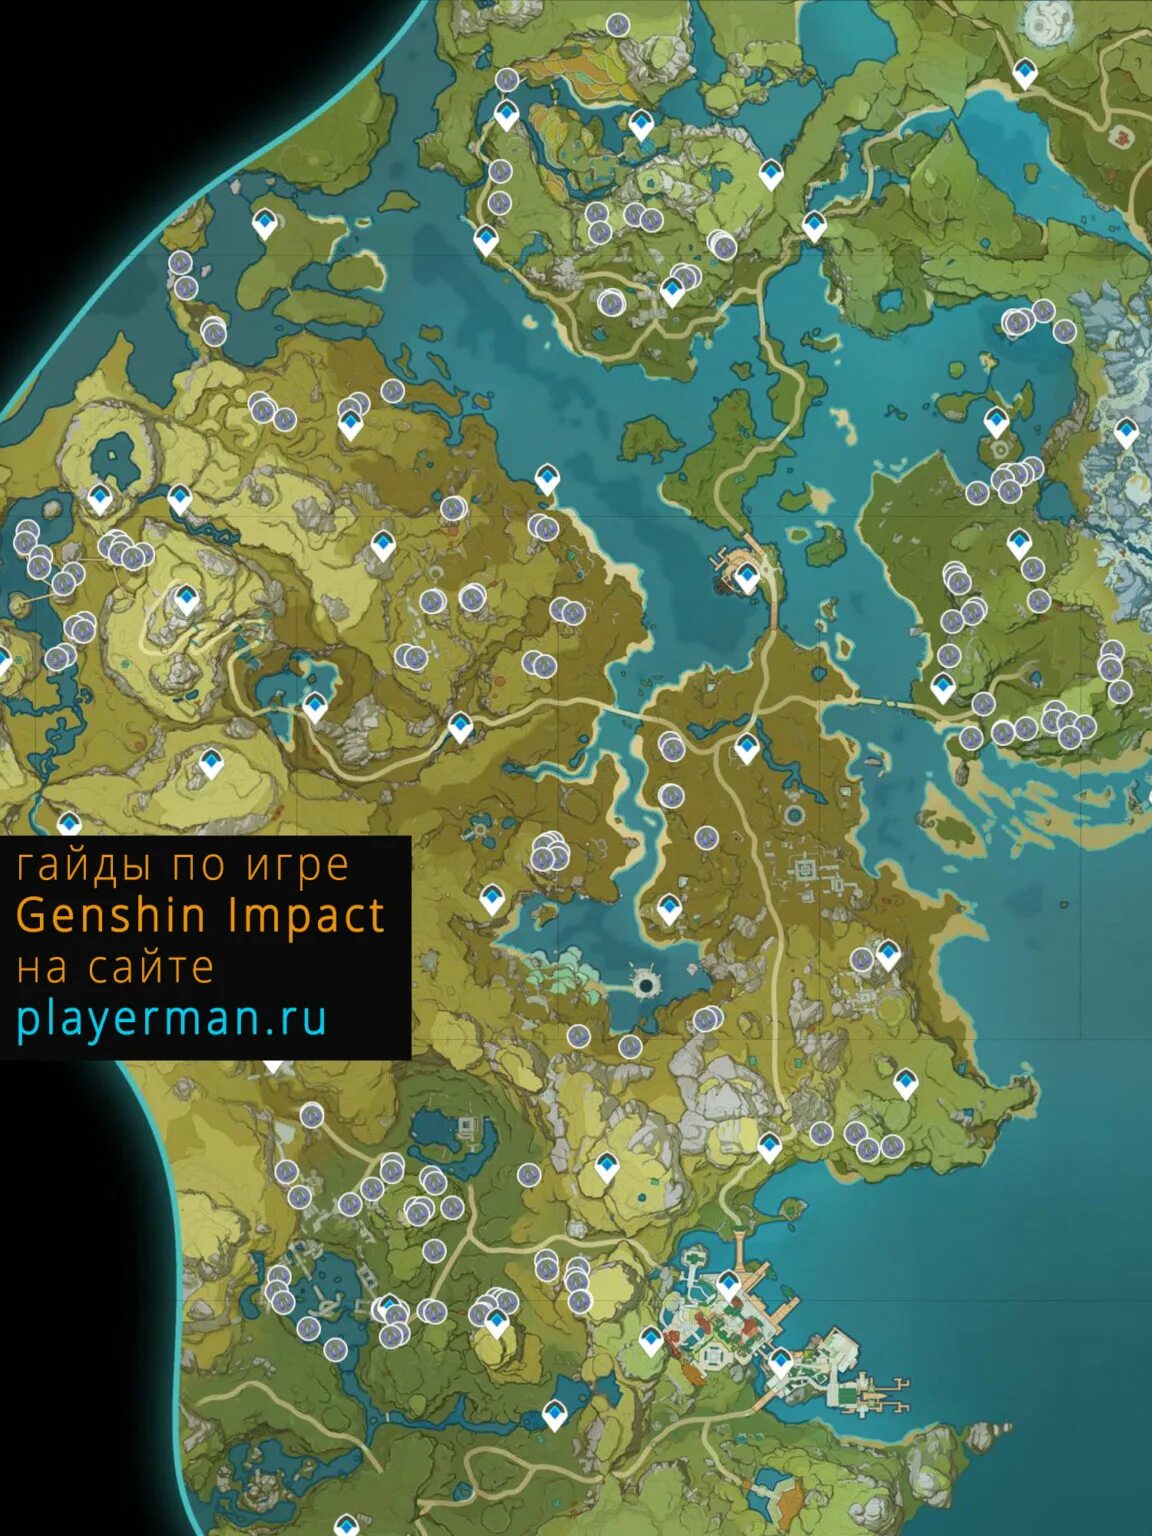 Карта колокольчиков геншин. Карта колокольчиков Геншин Импакт. Стеклянные колокольчики Геншин. Стеклянные колокольчики Genshin Impact на карте. Стеклянные колокольчики Genshin Impact.